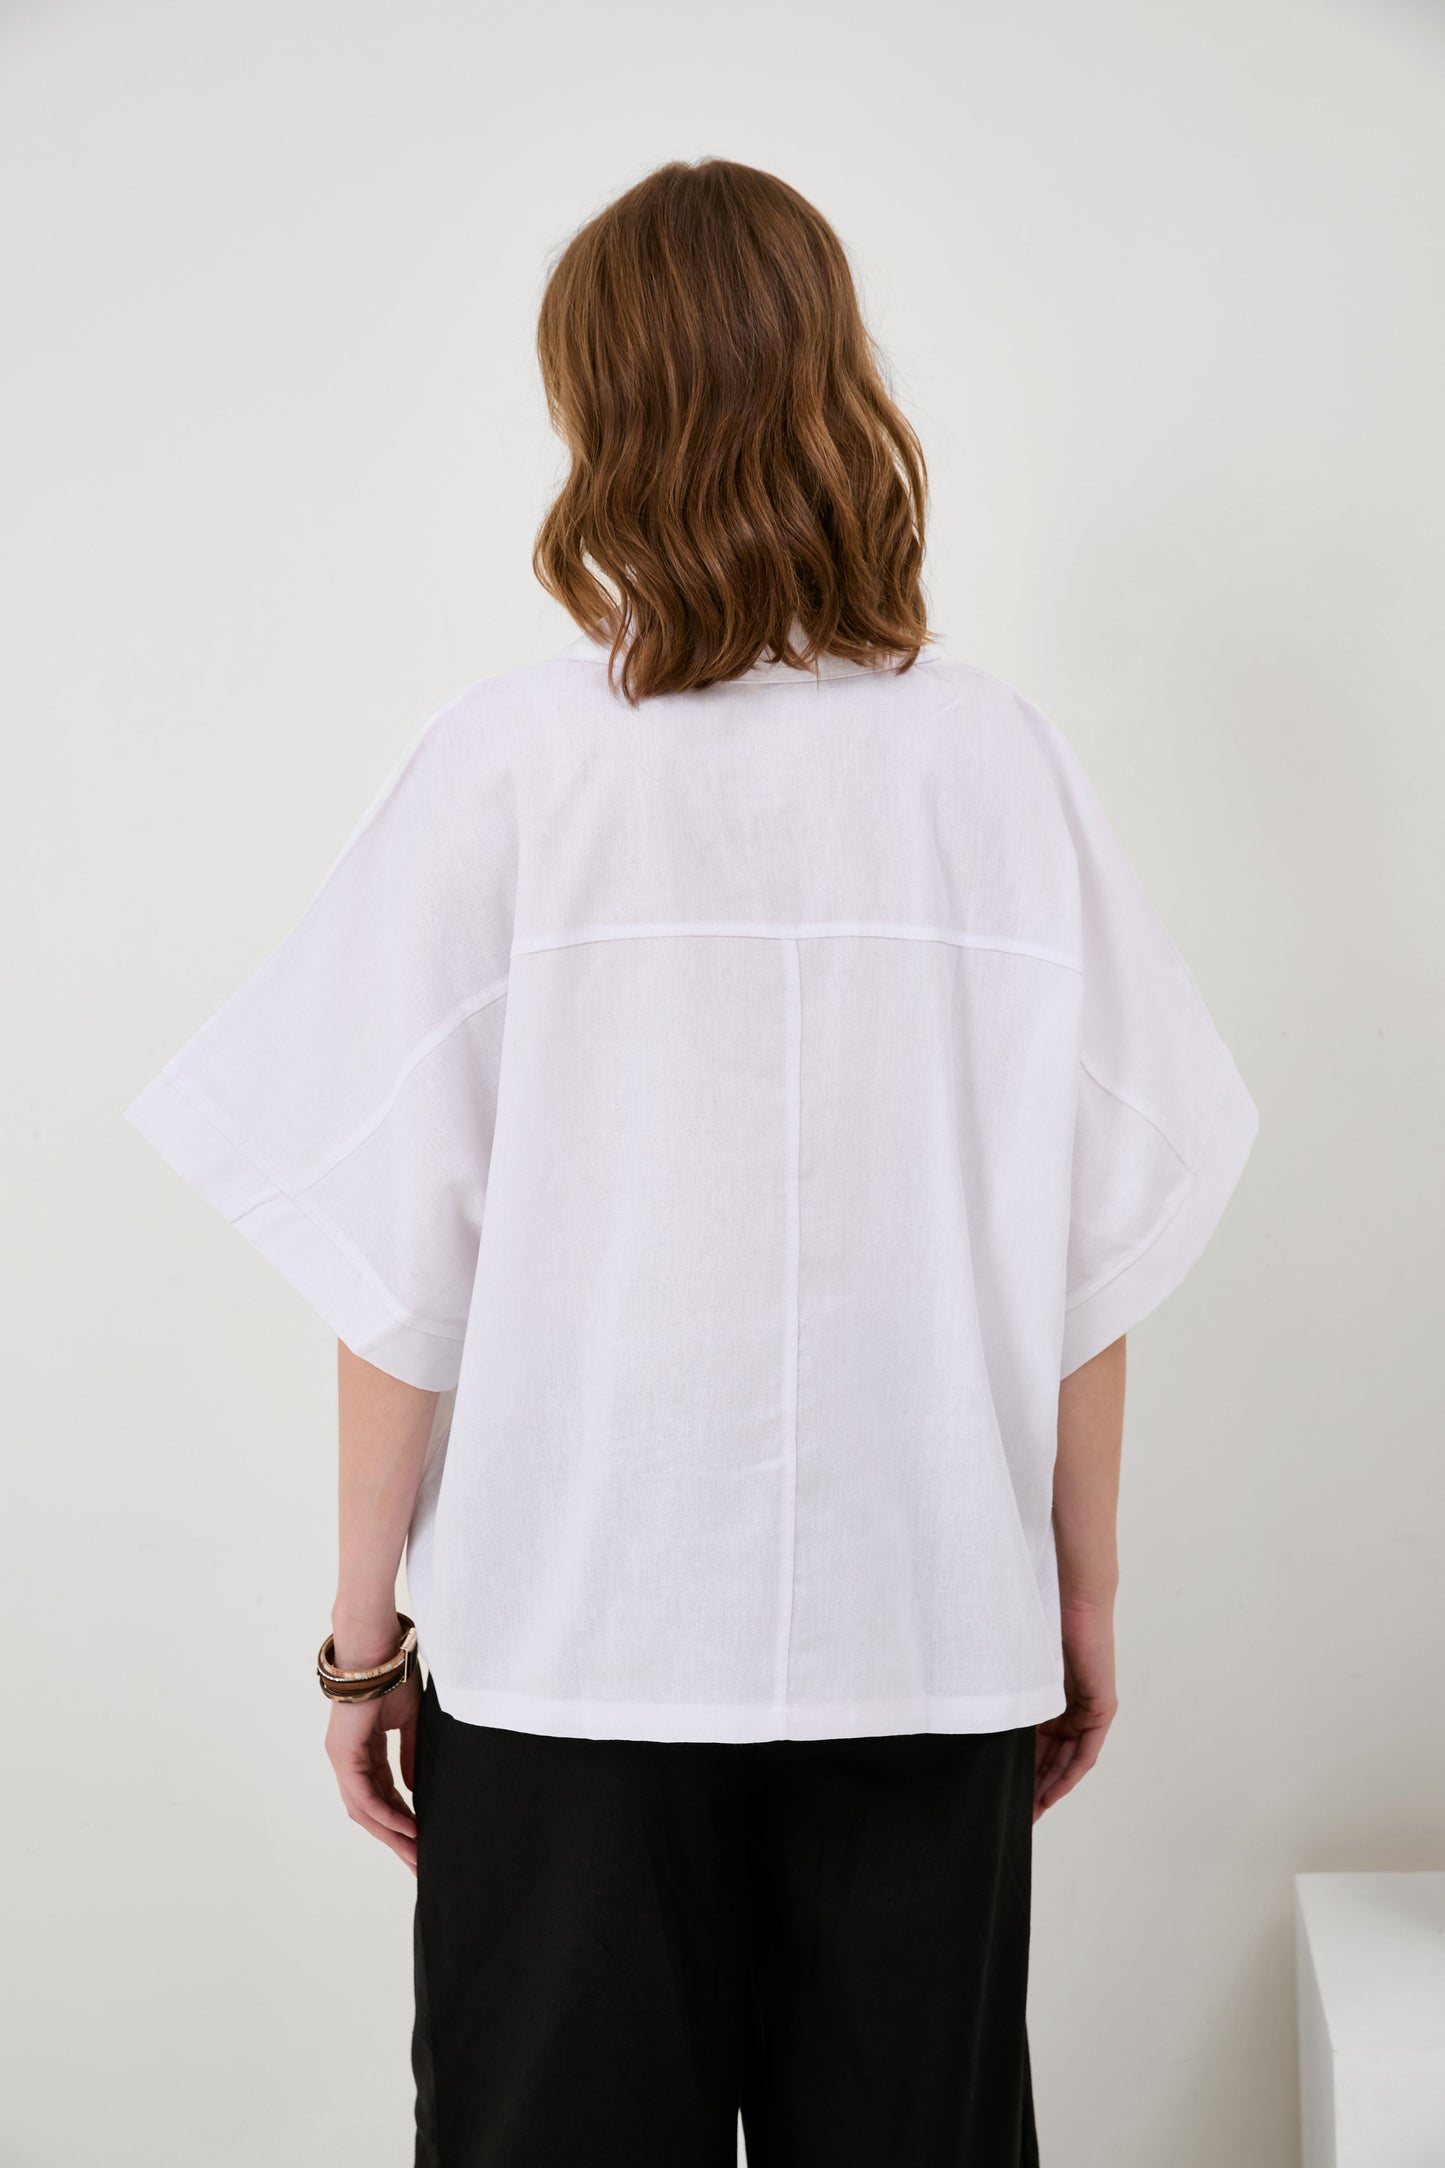 Cotton-Linen  V-Neck Solid Color T-Shirt